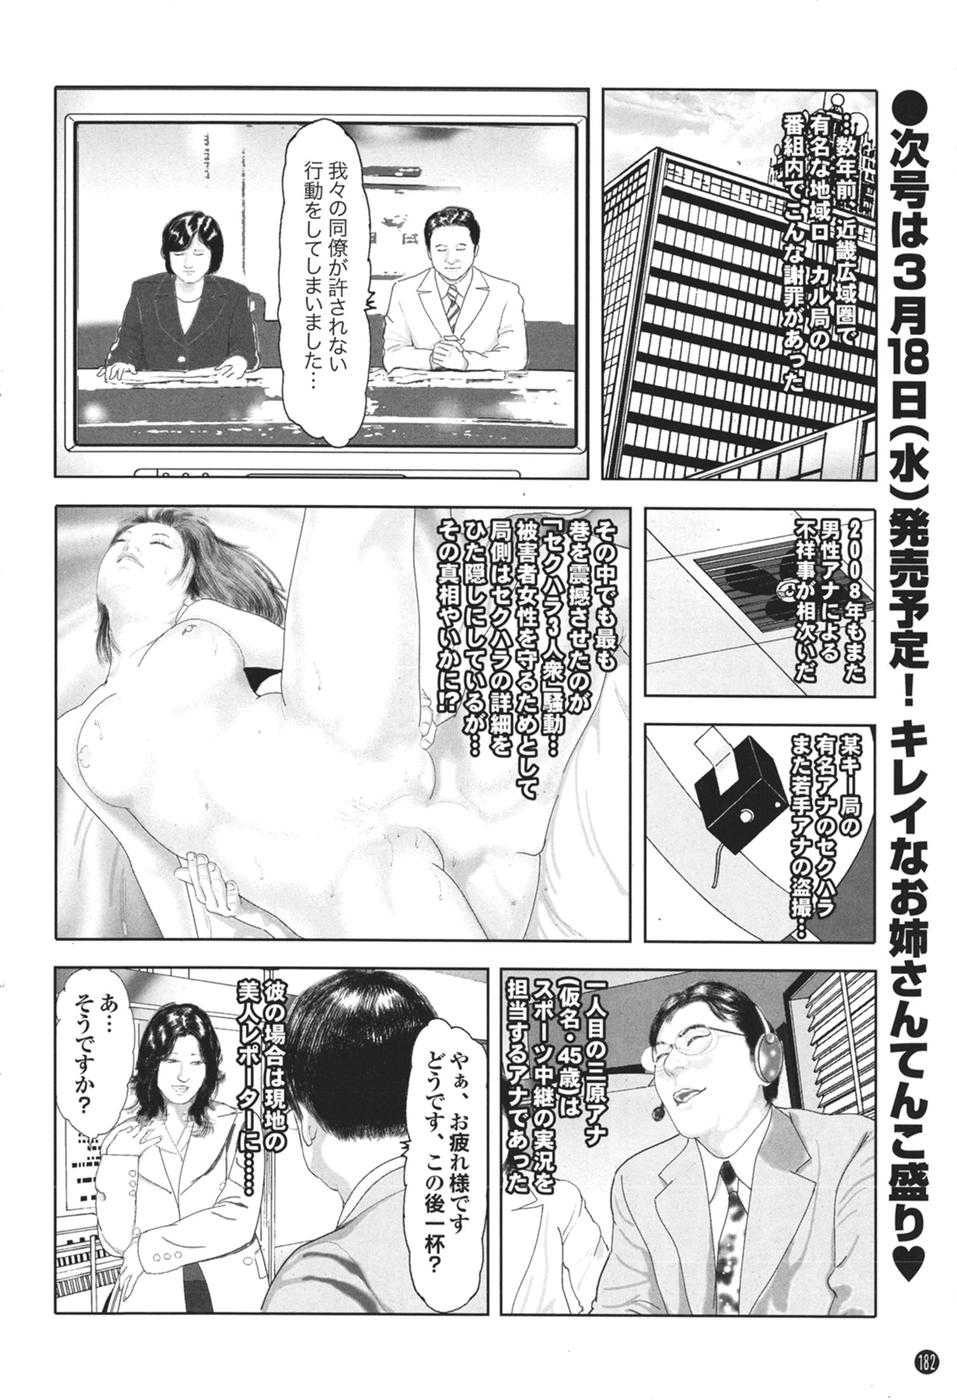 Mitsu-Man Vol.08 [2009-04] 